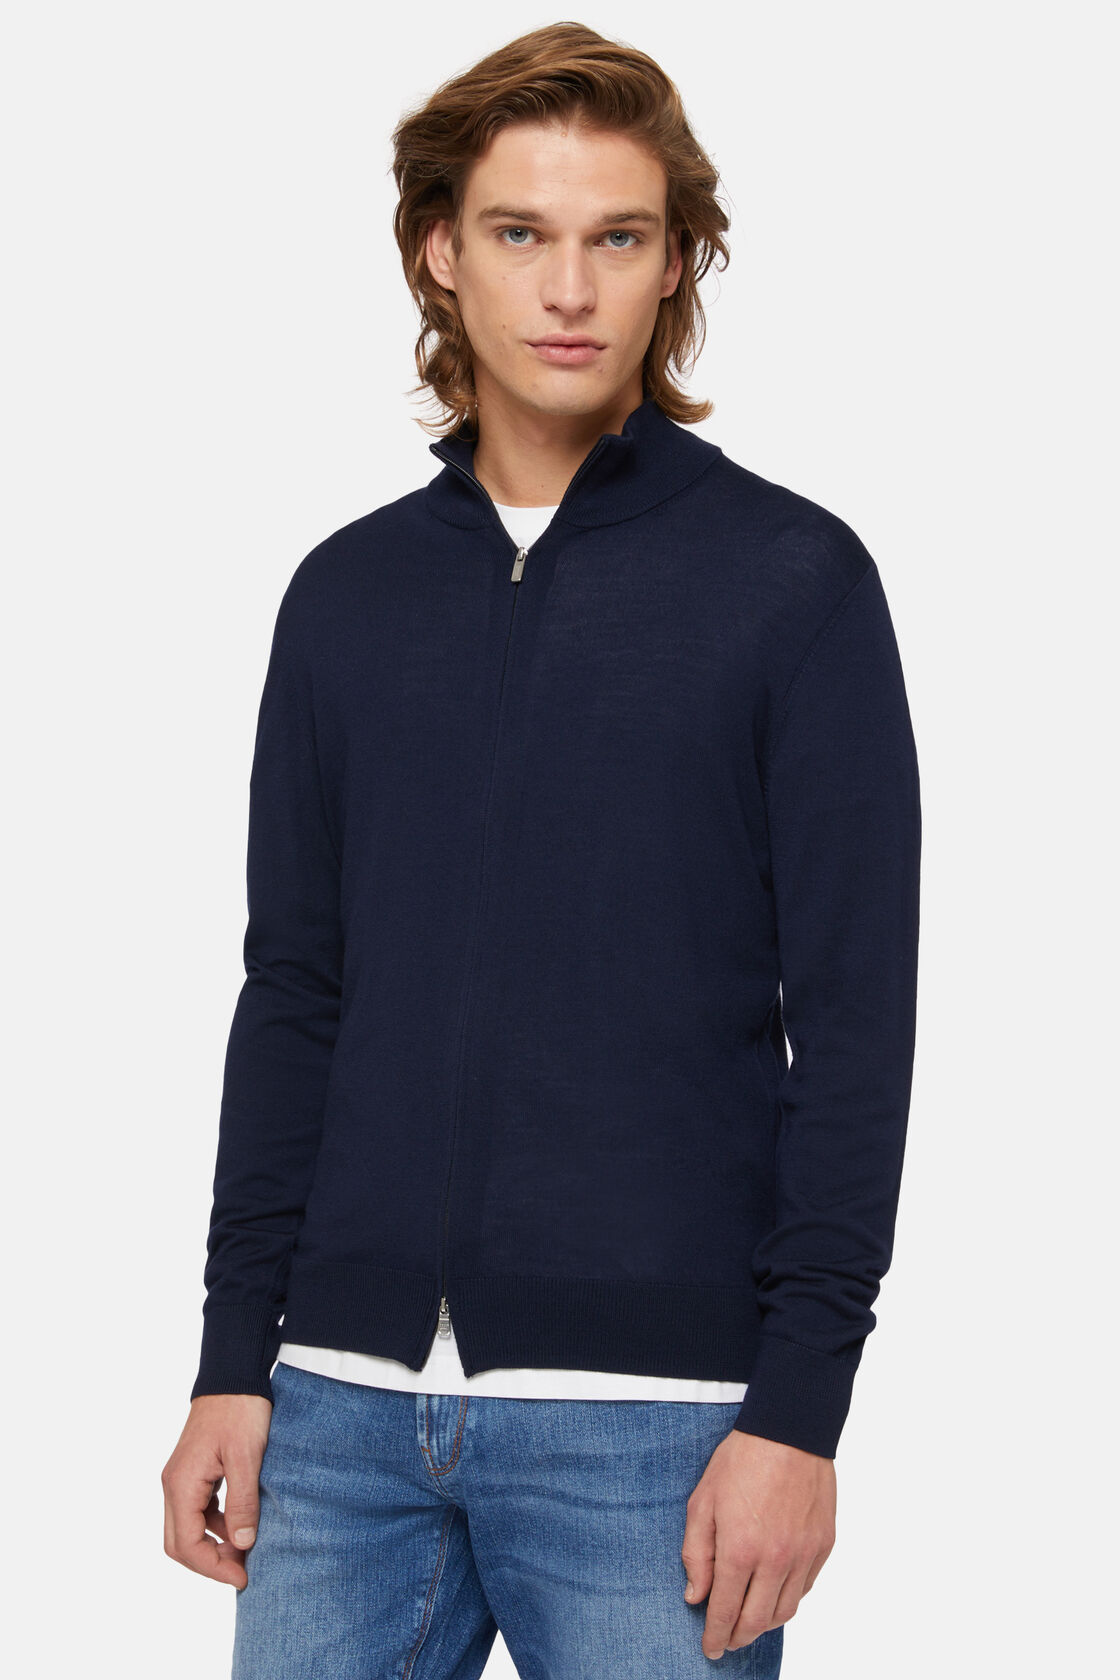 Granatowy sweter z wełny merino zapinany na zamek, Navy blue, hi-res